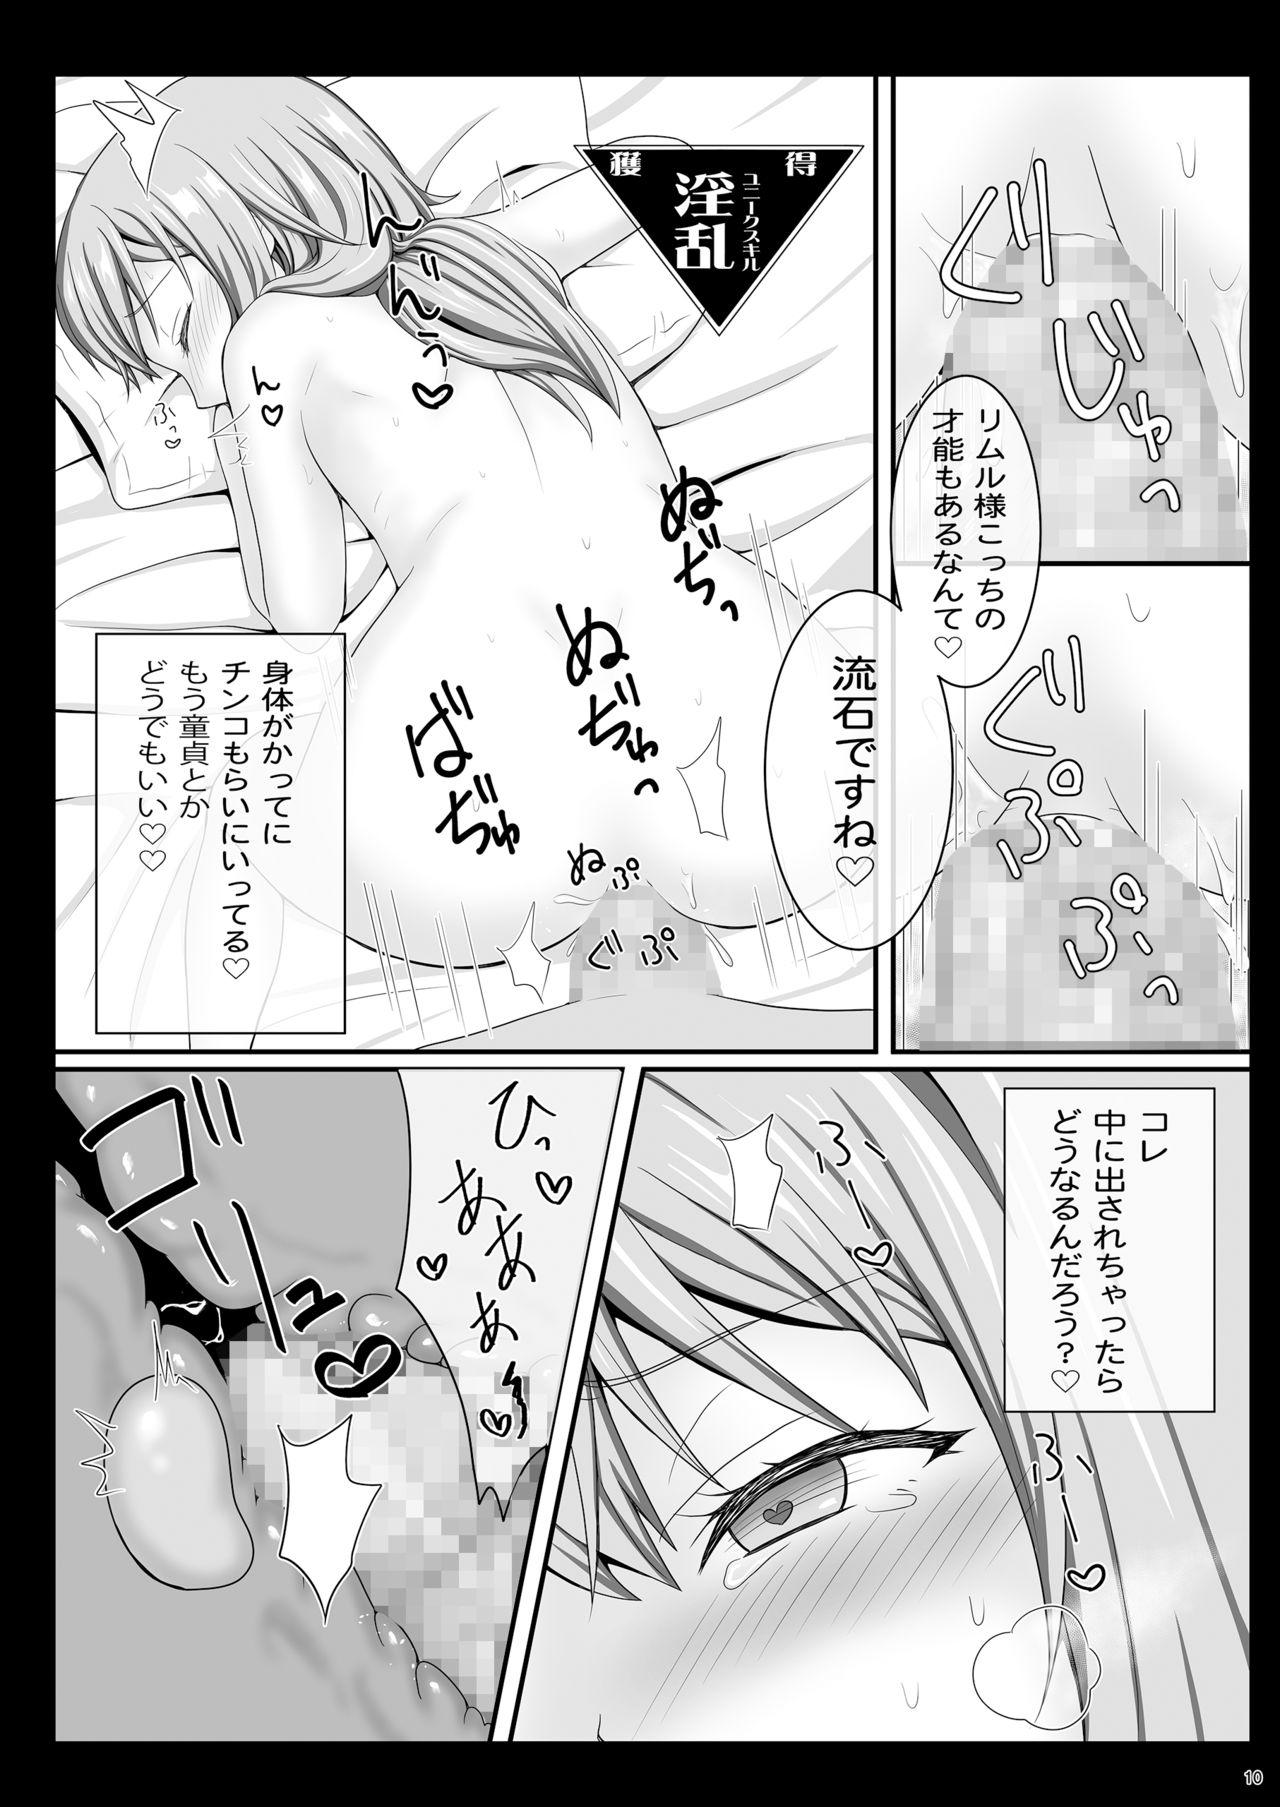 Free Blow Job Etchina Rimuru-sama No Matome - Tensei shitara slime datta ken Jacking Off - Page 9